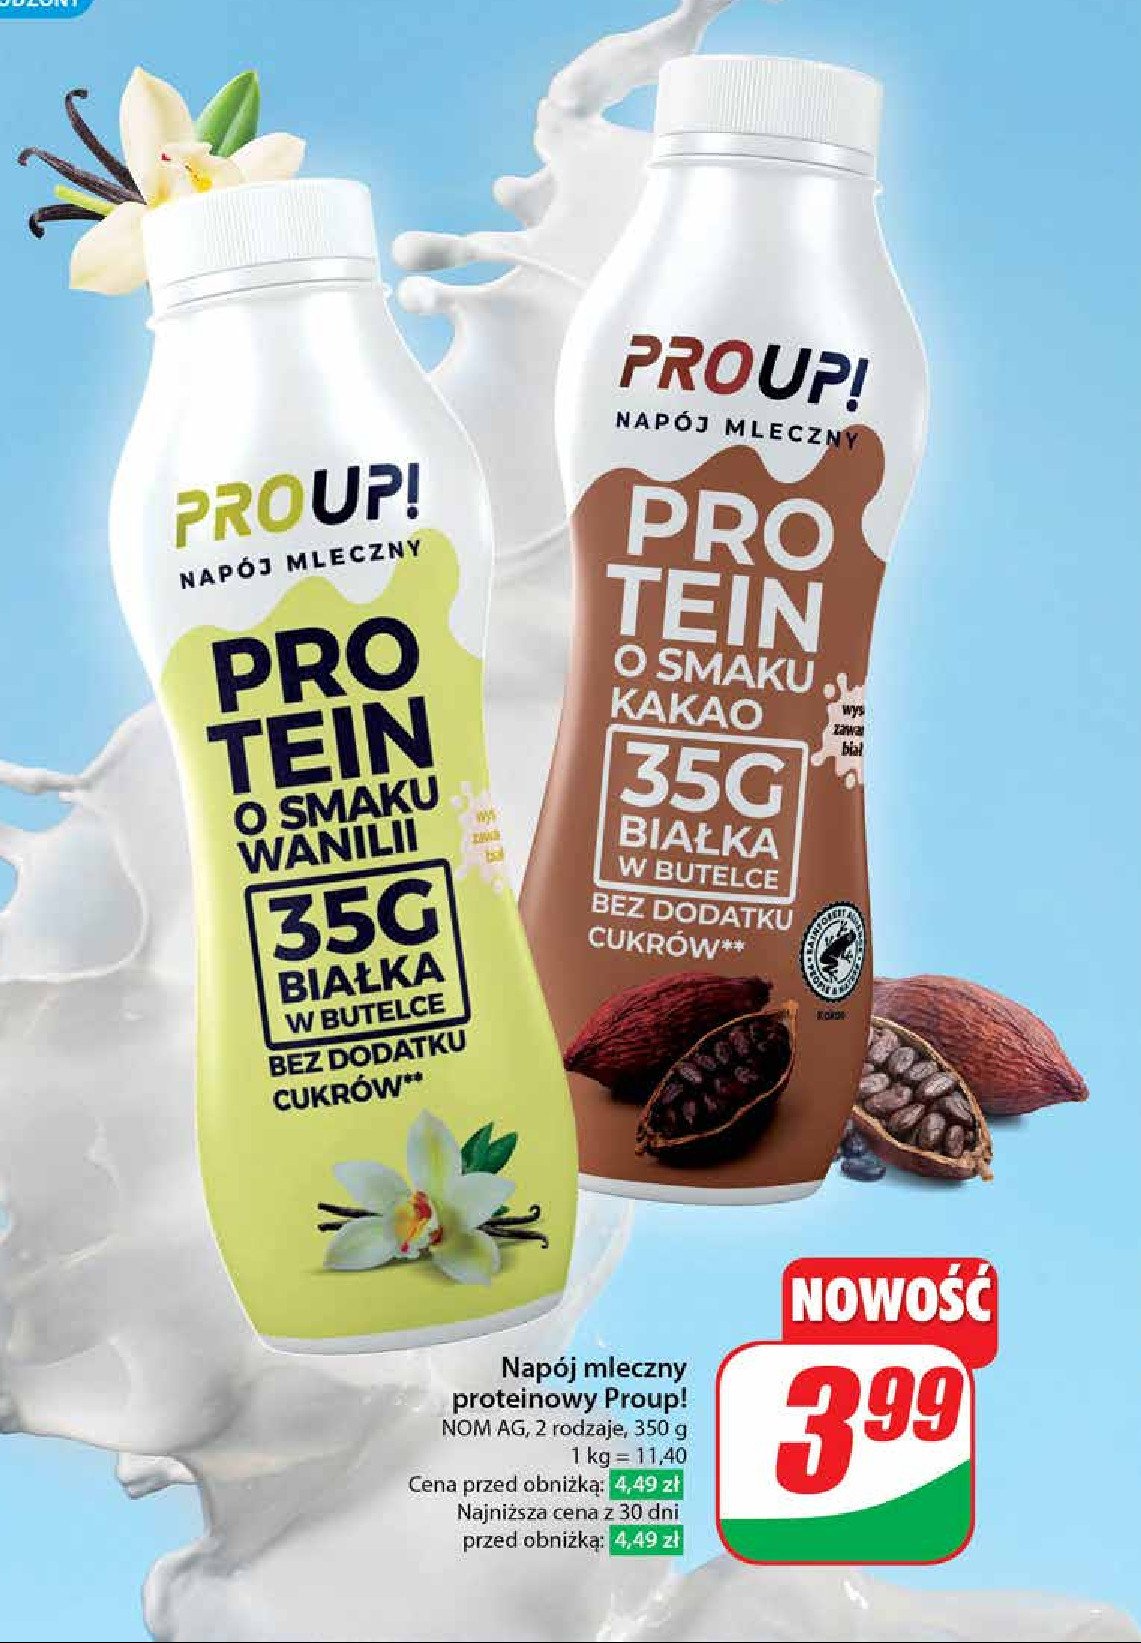 Napój mleczny proteinowy kakaowy Proup! promocja